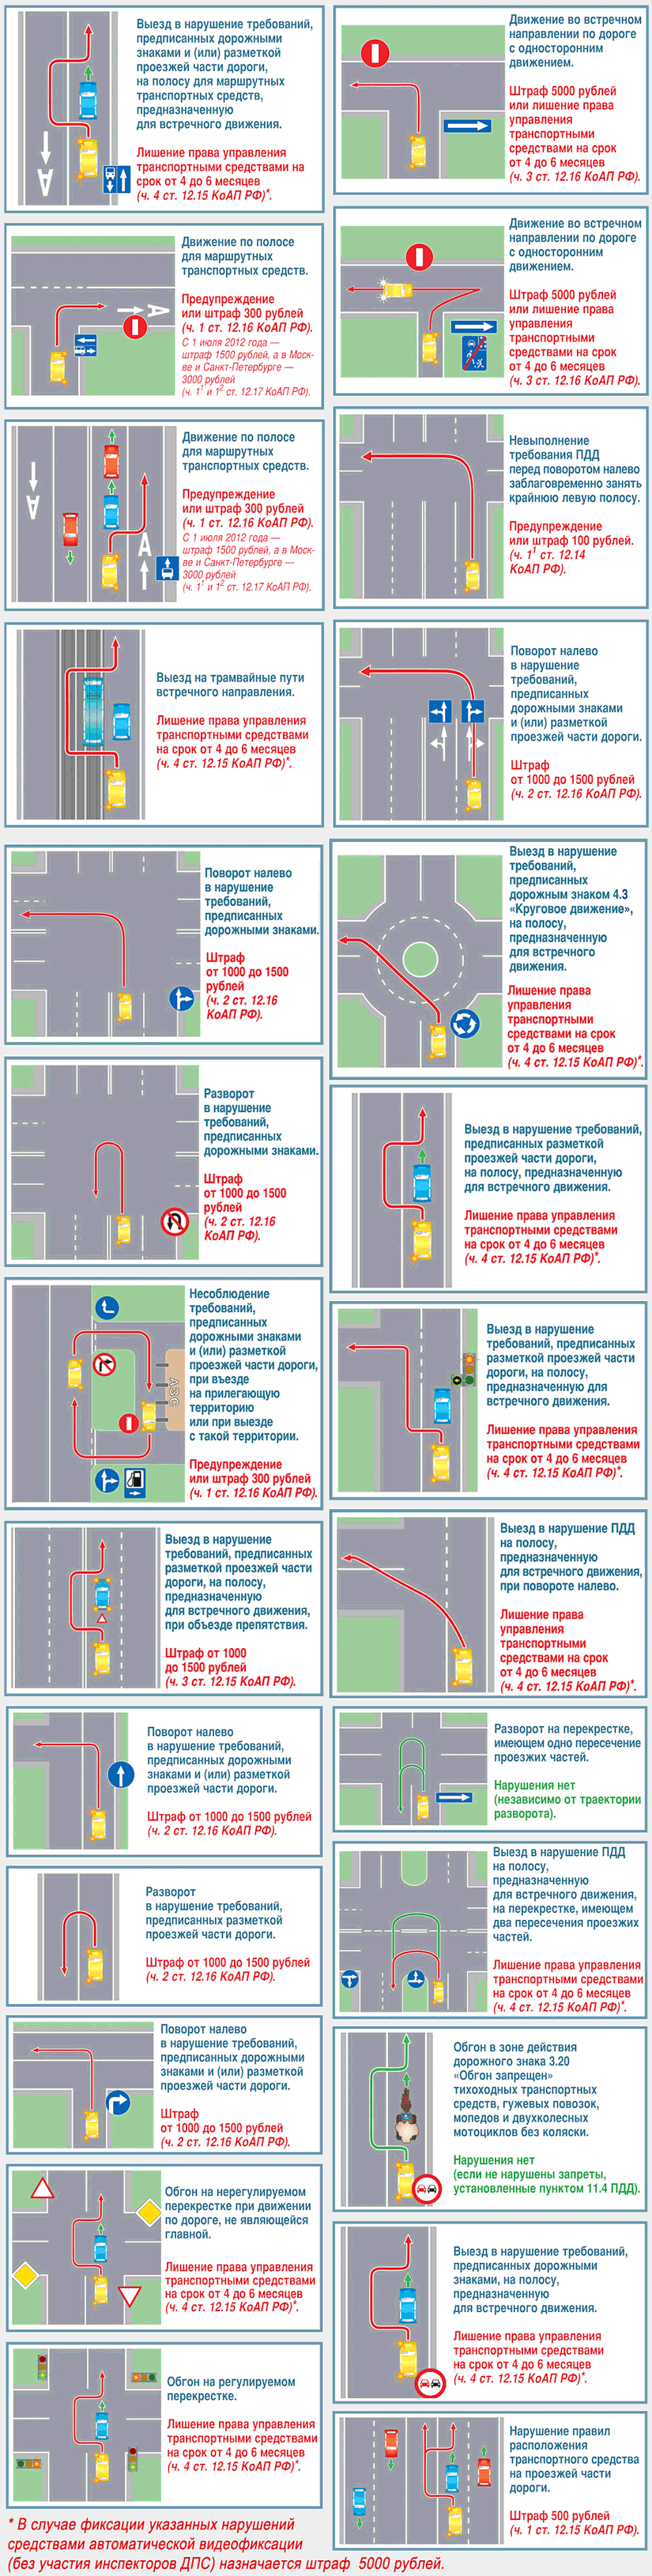 Плакат-схемы с нарушениями правил дорожного движения РФ с разъяснениями спорных ситуаций возникающих в процессе дорожного движения. Транспортная компания МосАвтоПро.